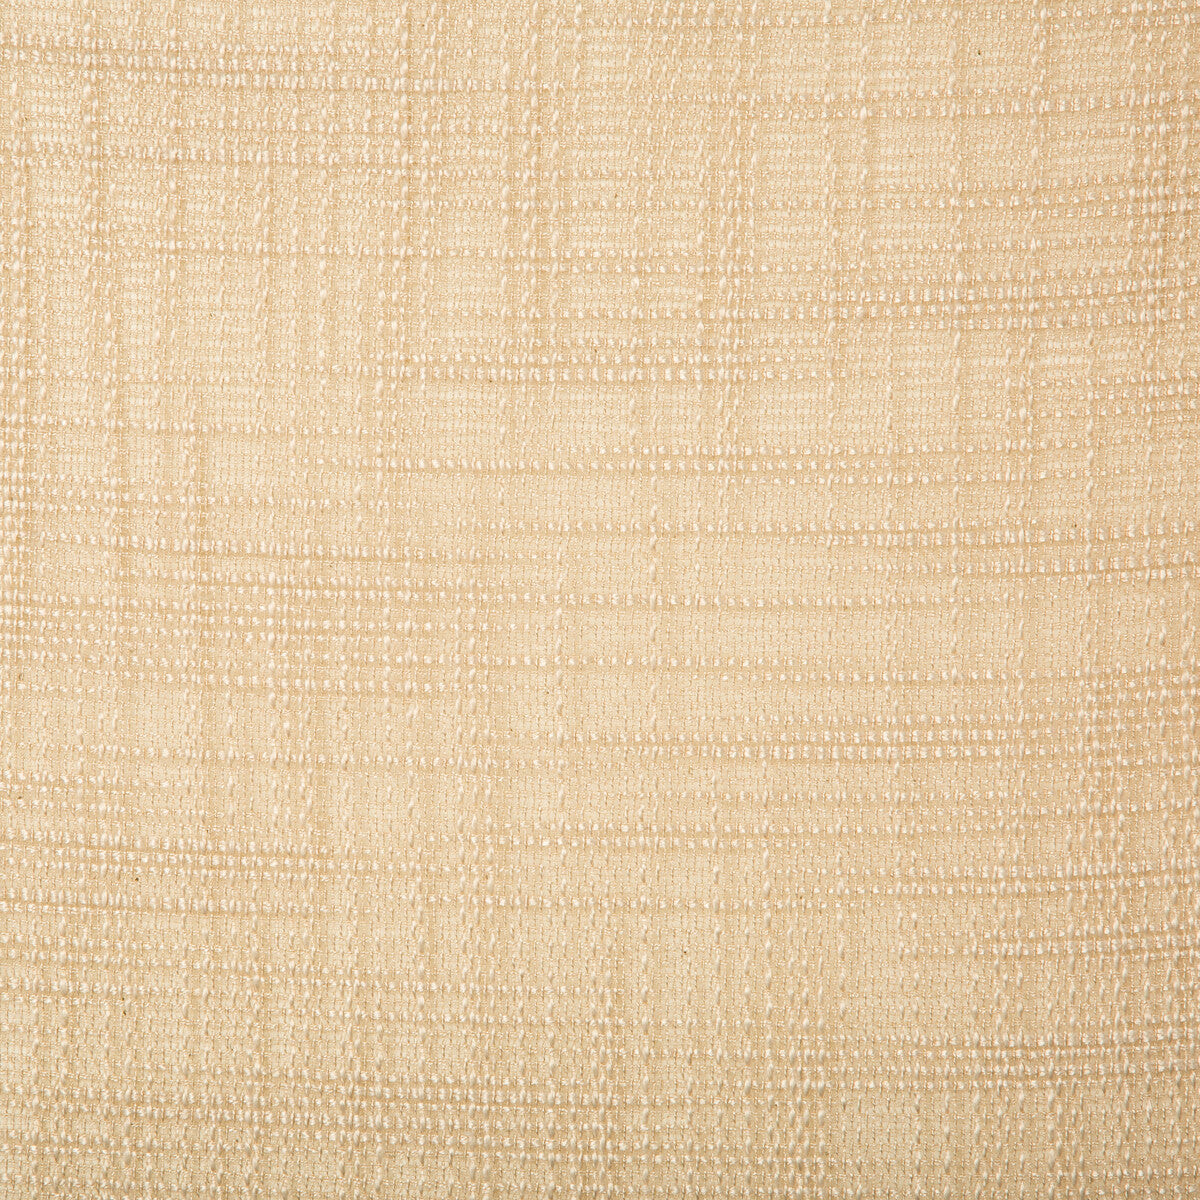 Kravet Basics fabric in 4670-16 color - pattern 4670.16.0 - by Kravet Basics